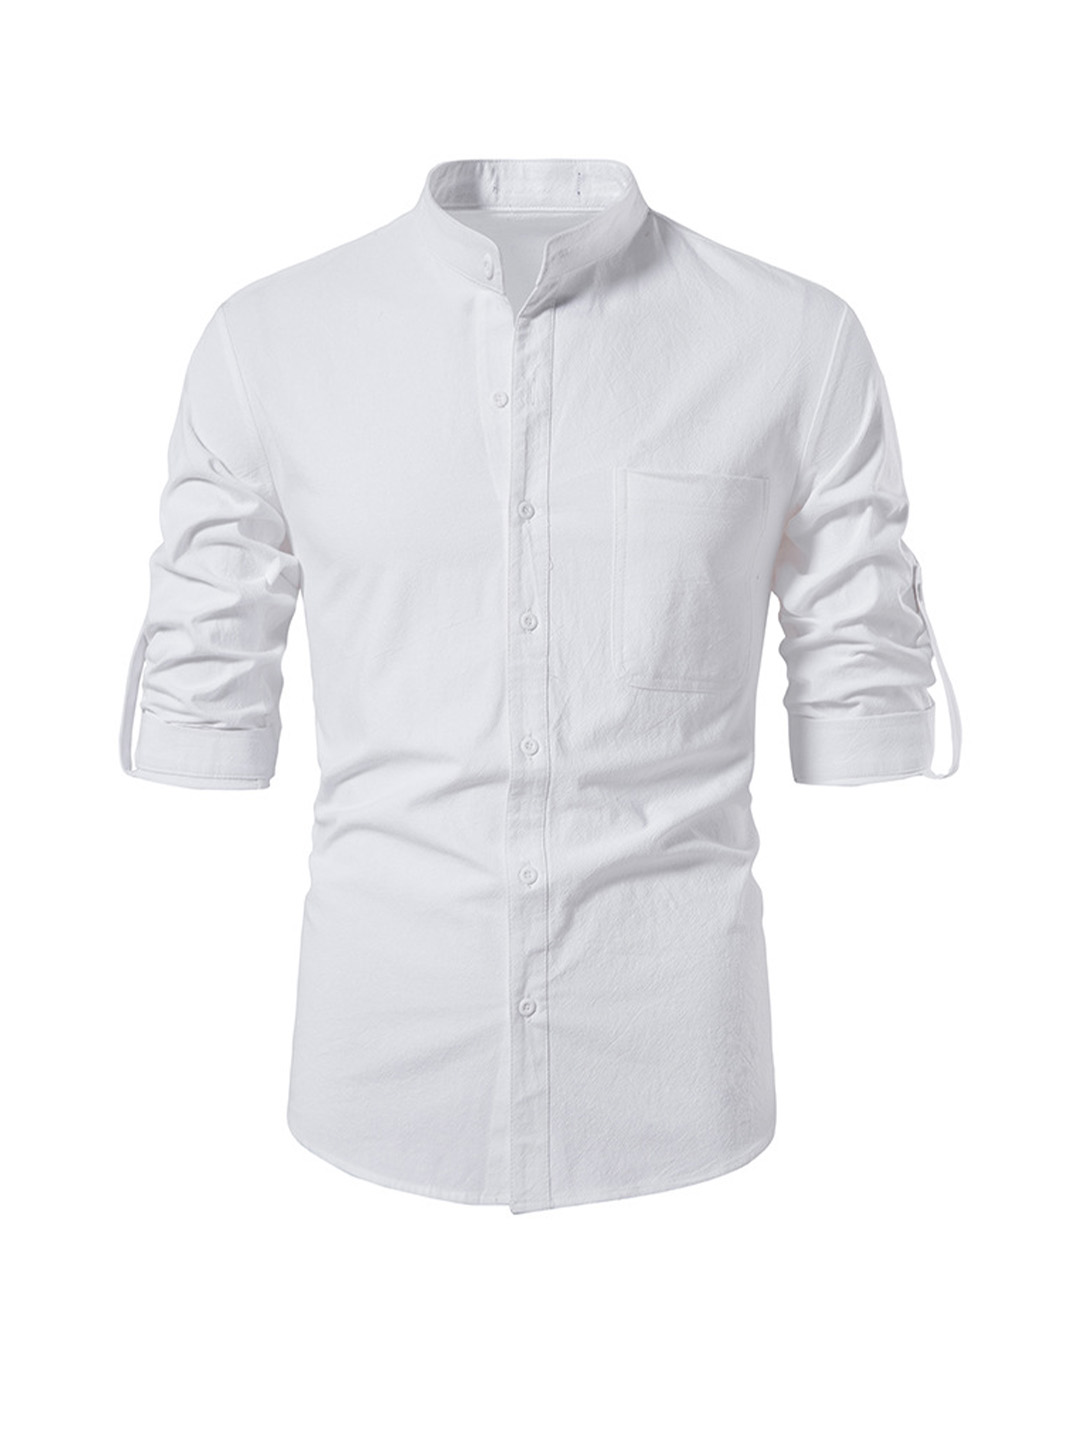 Men's Wilson Stand Collar Long-sleeved Shirt-poisonstreetwear.com